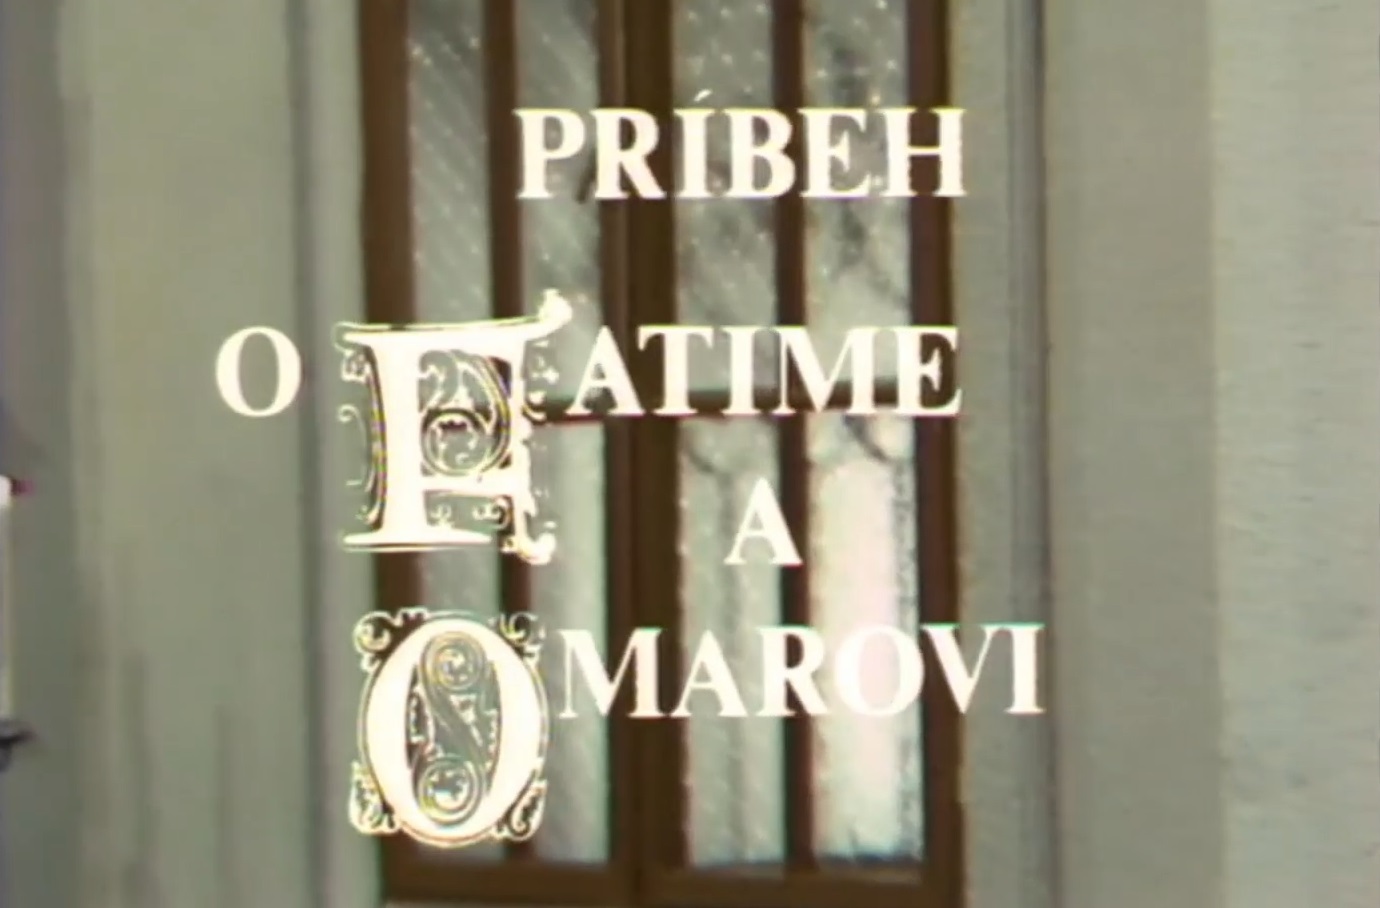 Stiahni si Filmy CZ/SK dabing Pribeh o Fatime a Omarovi (1975)(SK)[TvRip] = CSFD 62%